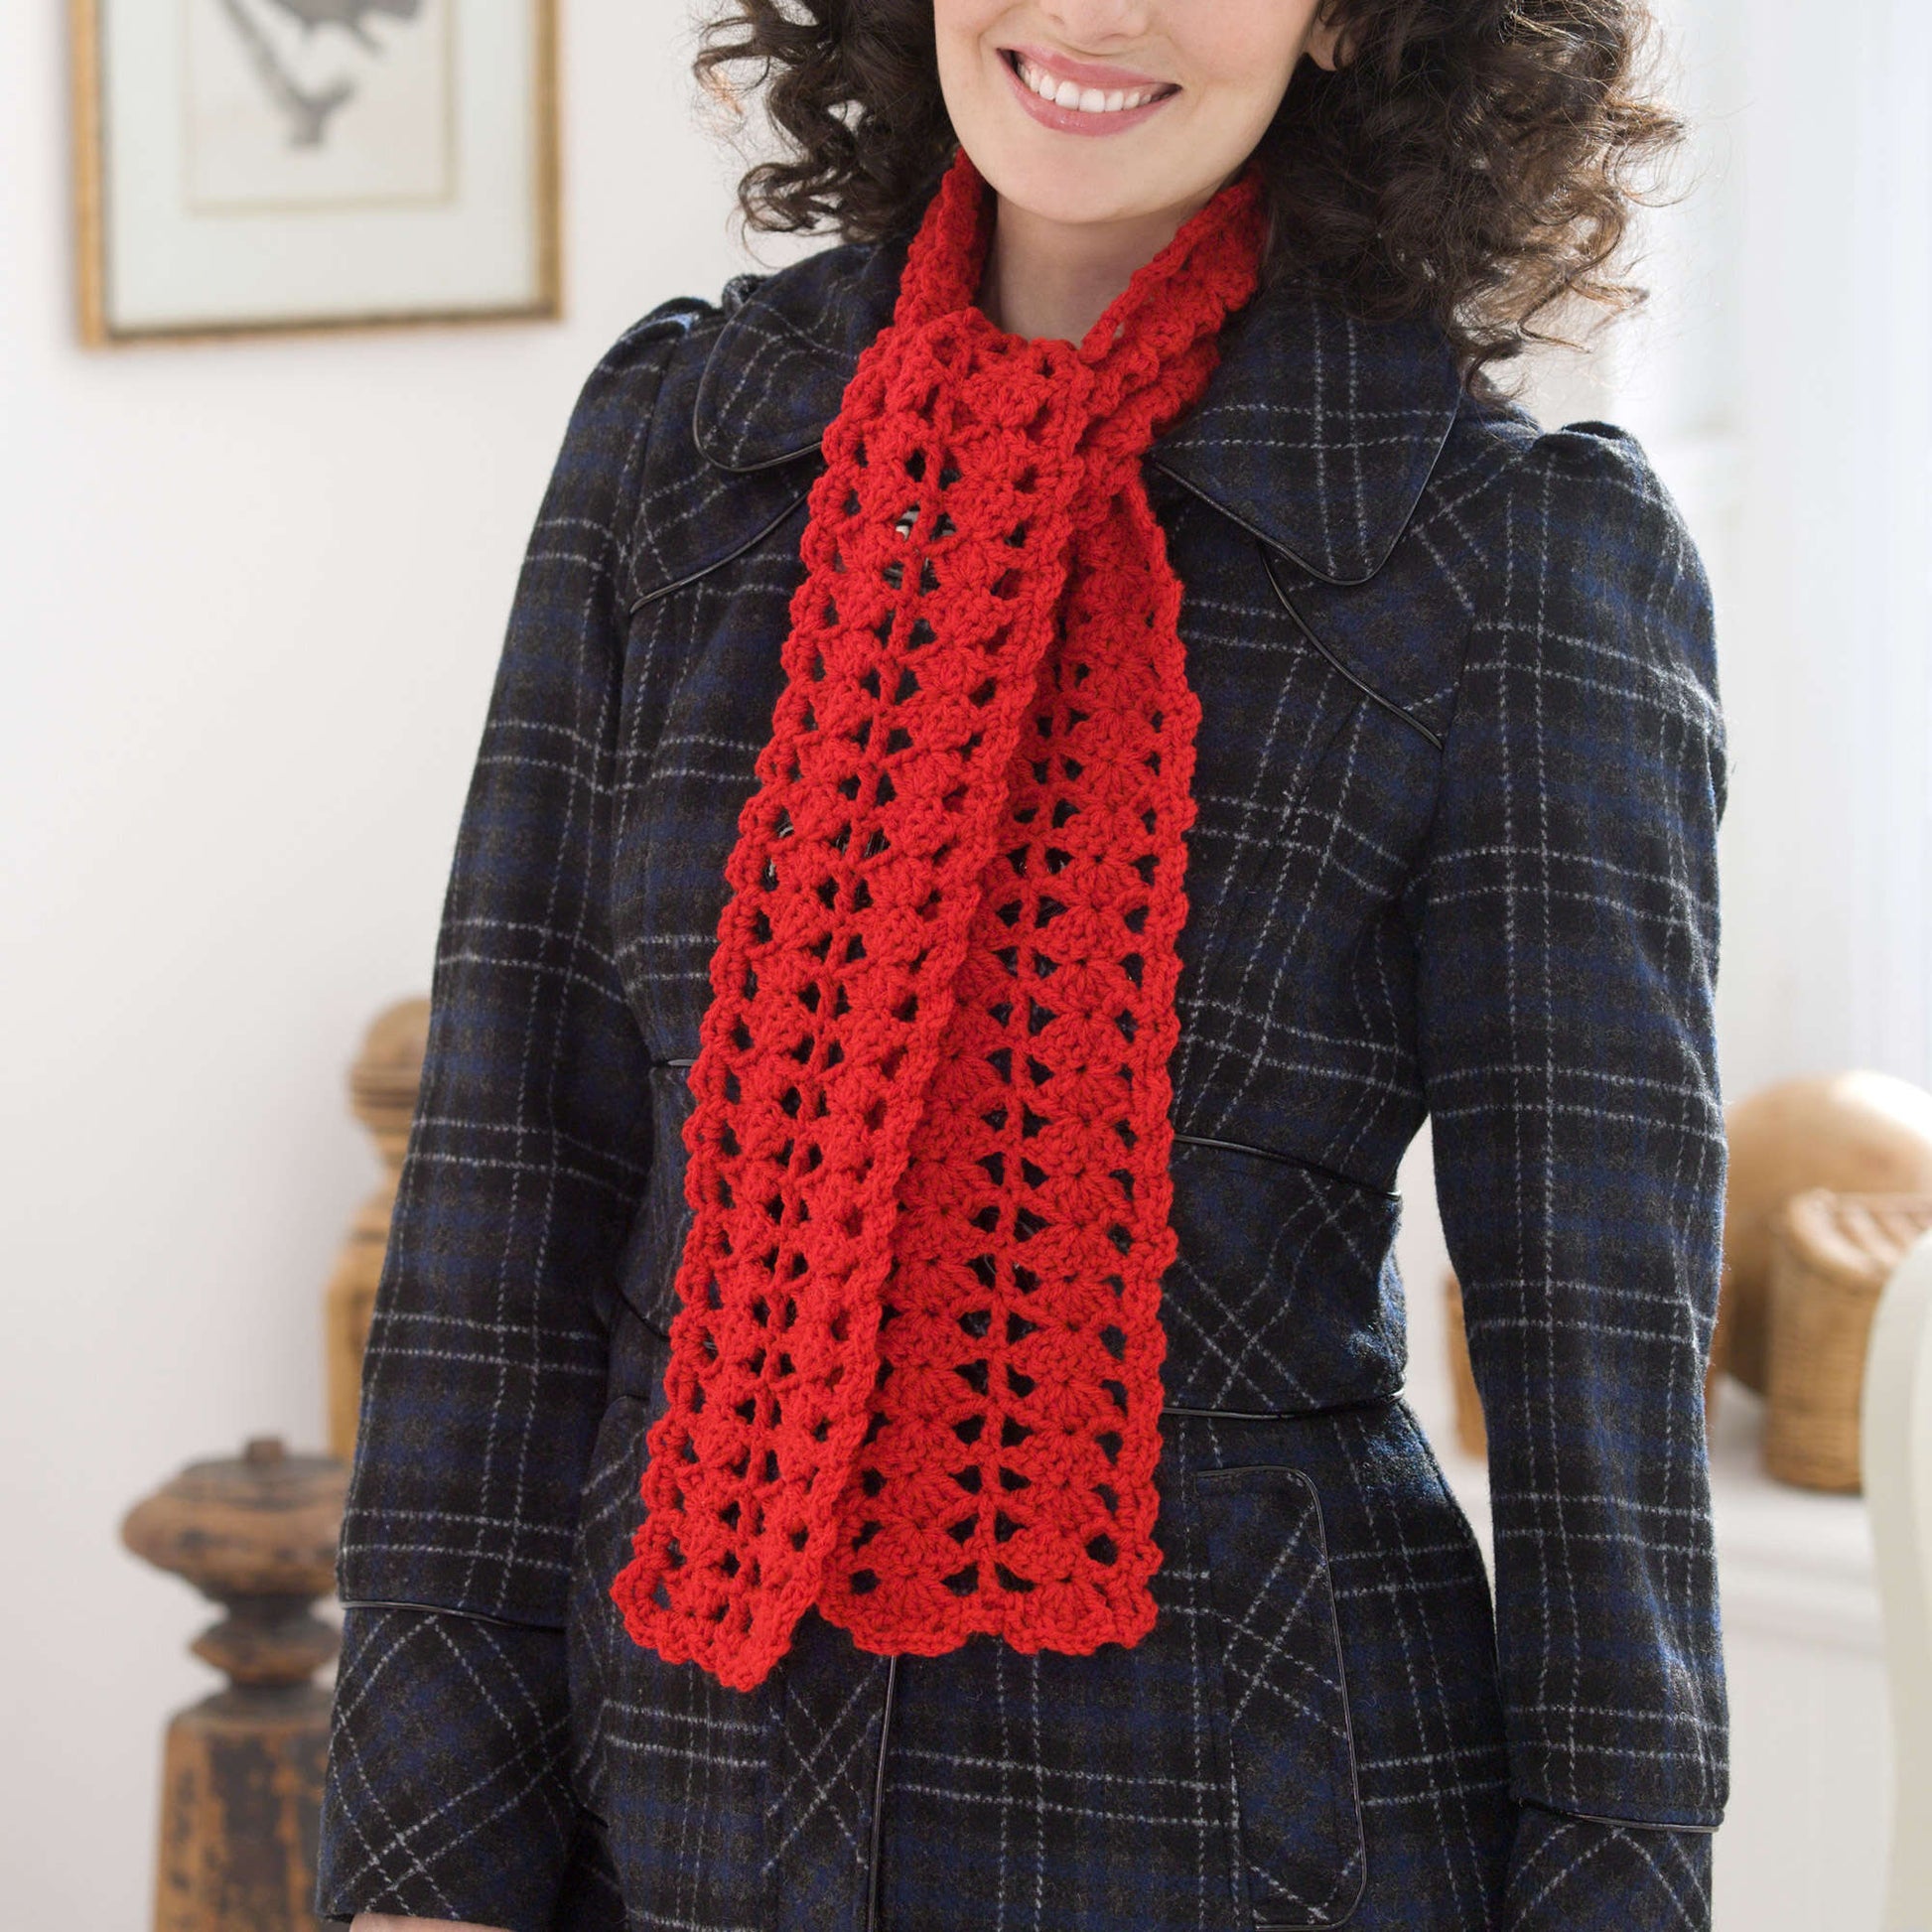 Red Heart Heartwarming Crochet Scarf Pattern | Yarnspirations